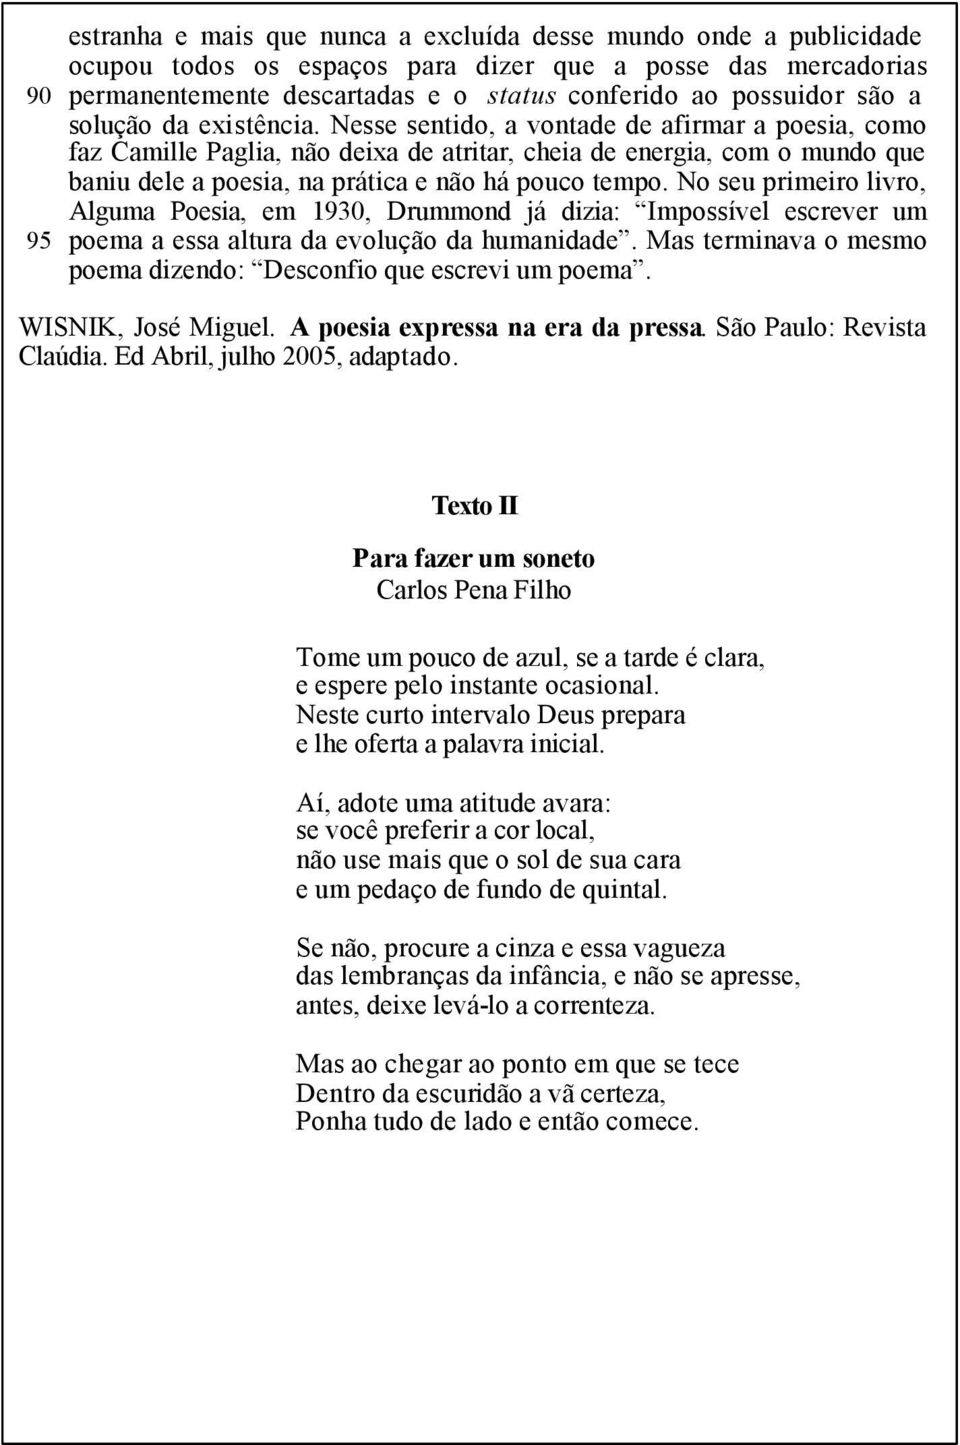 Nesse sentido, a vontade de afirmar a poesia, como faz Camille Paglia, não deixa de atritar, cheia de energia, com o mundo que baniu dele a poesia, na prática e não há pouco tempo.